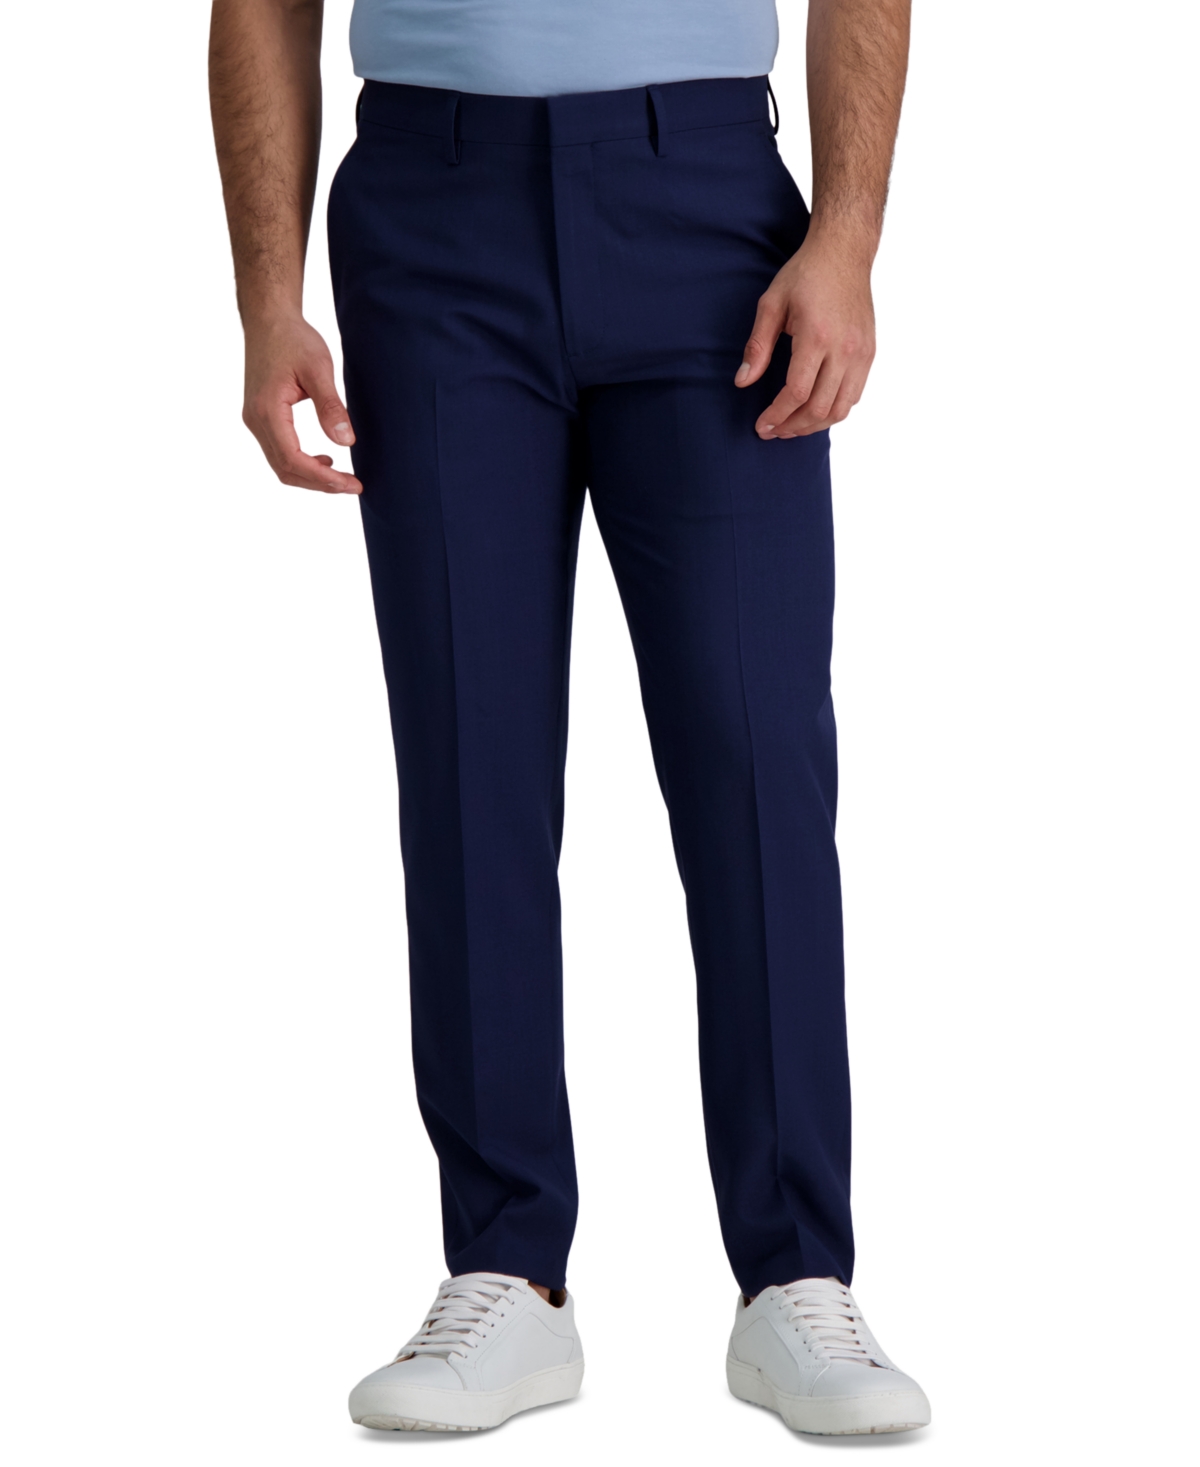 Men's Smart Wash Slim Fit Suit Separates Pants - Midnight